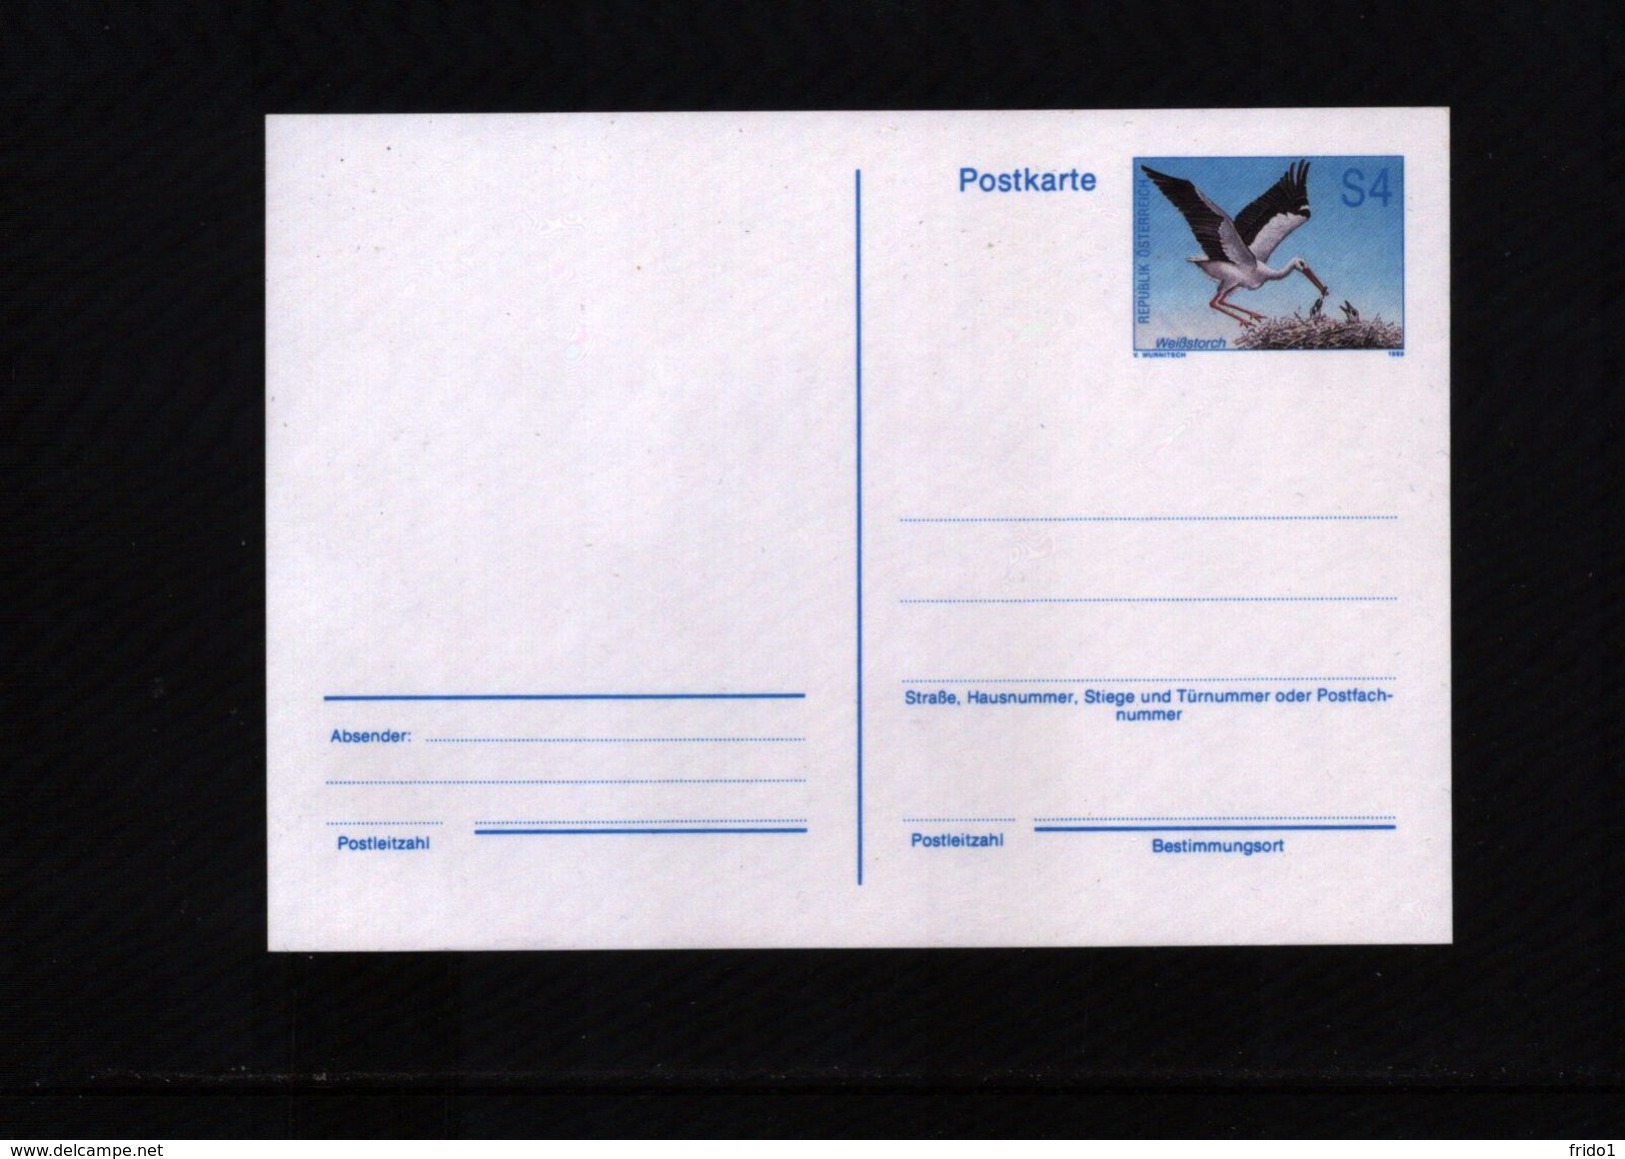 Austria / Oesterreich Michel P 497 Interesting Bird Postcard MNH - Storchenvögel